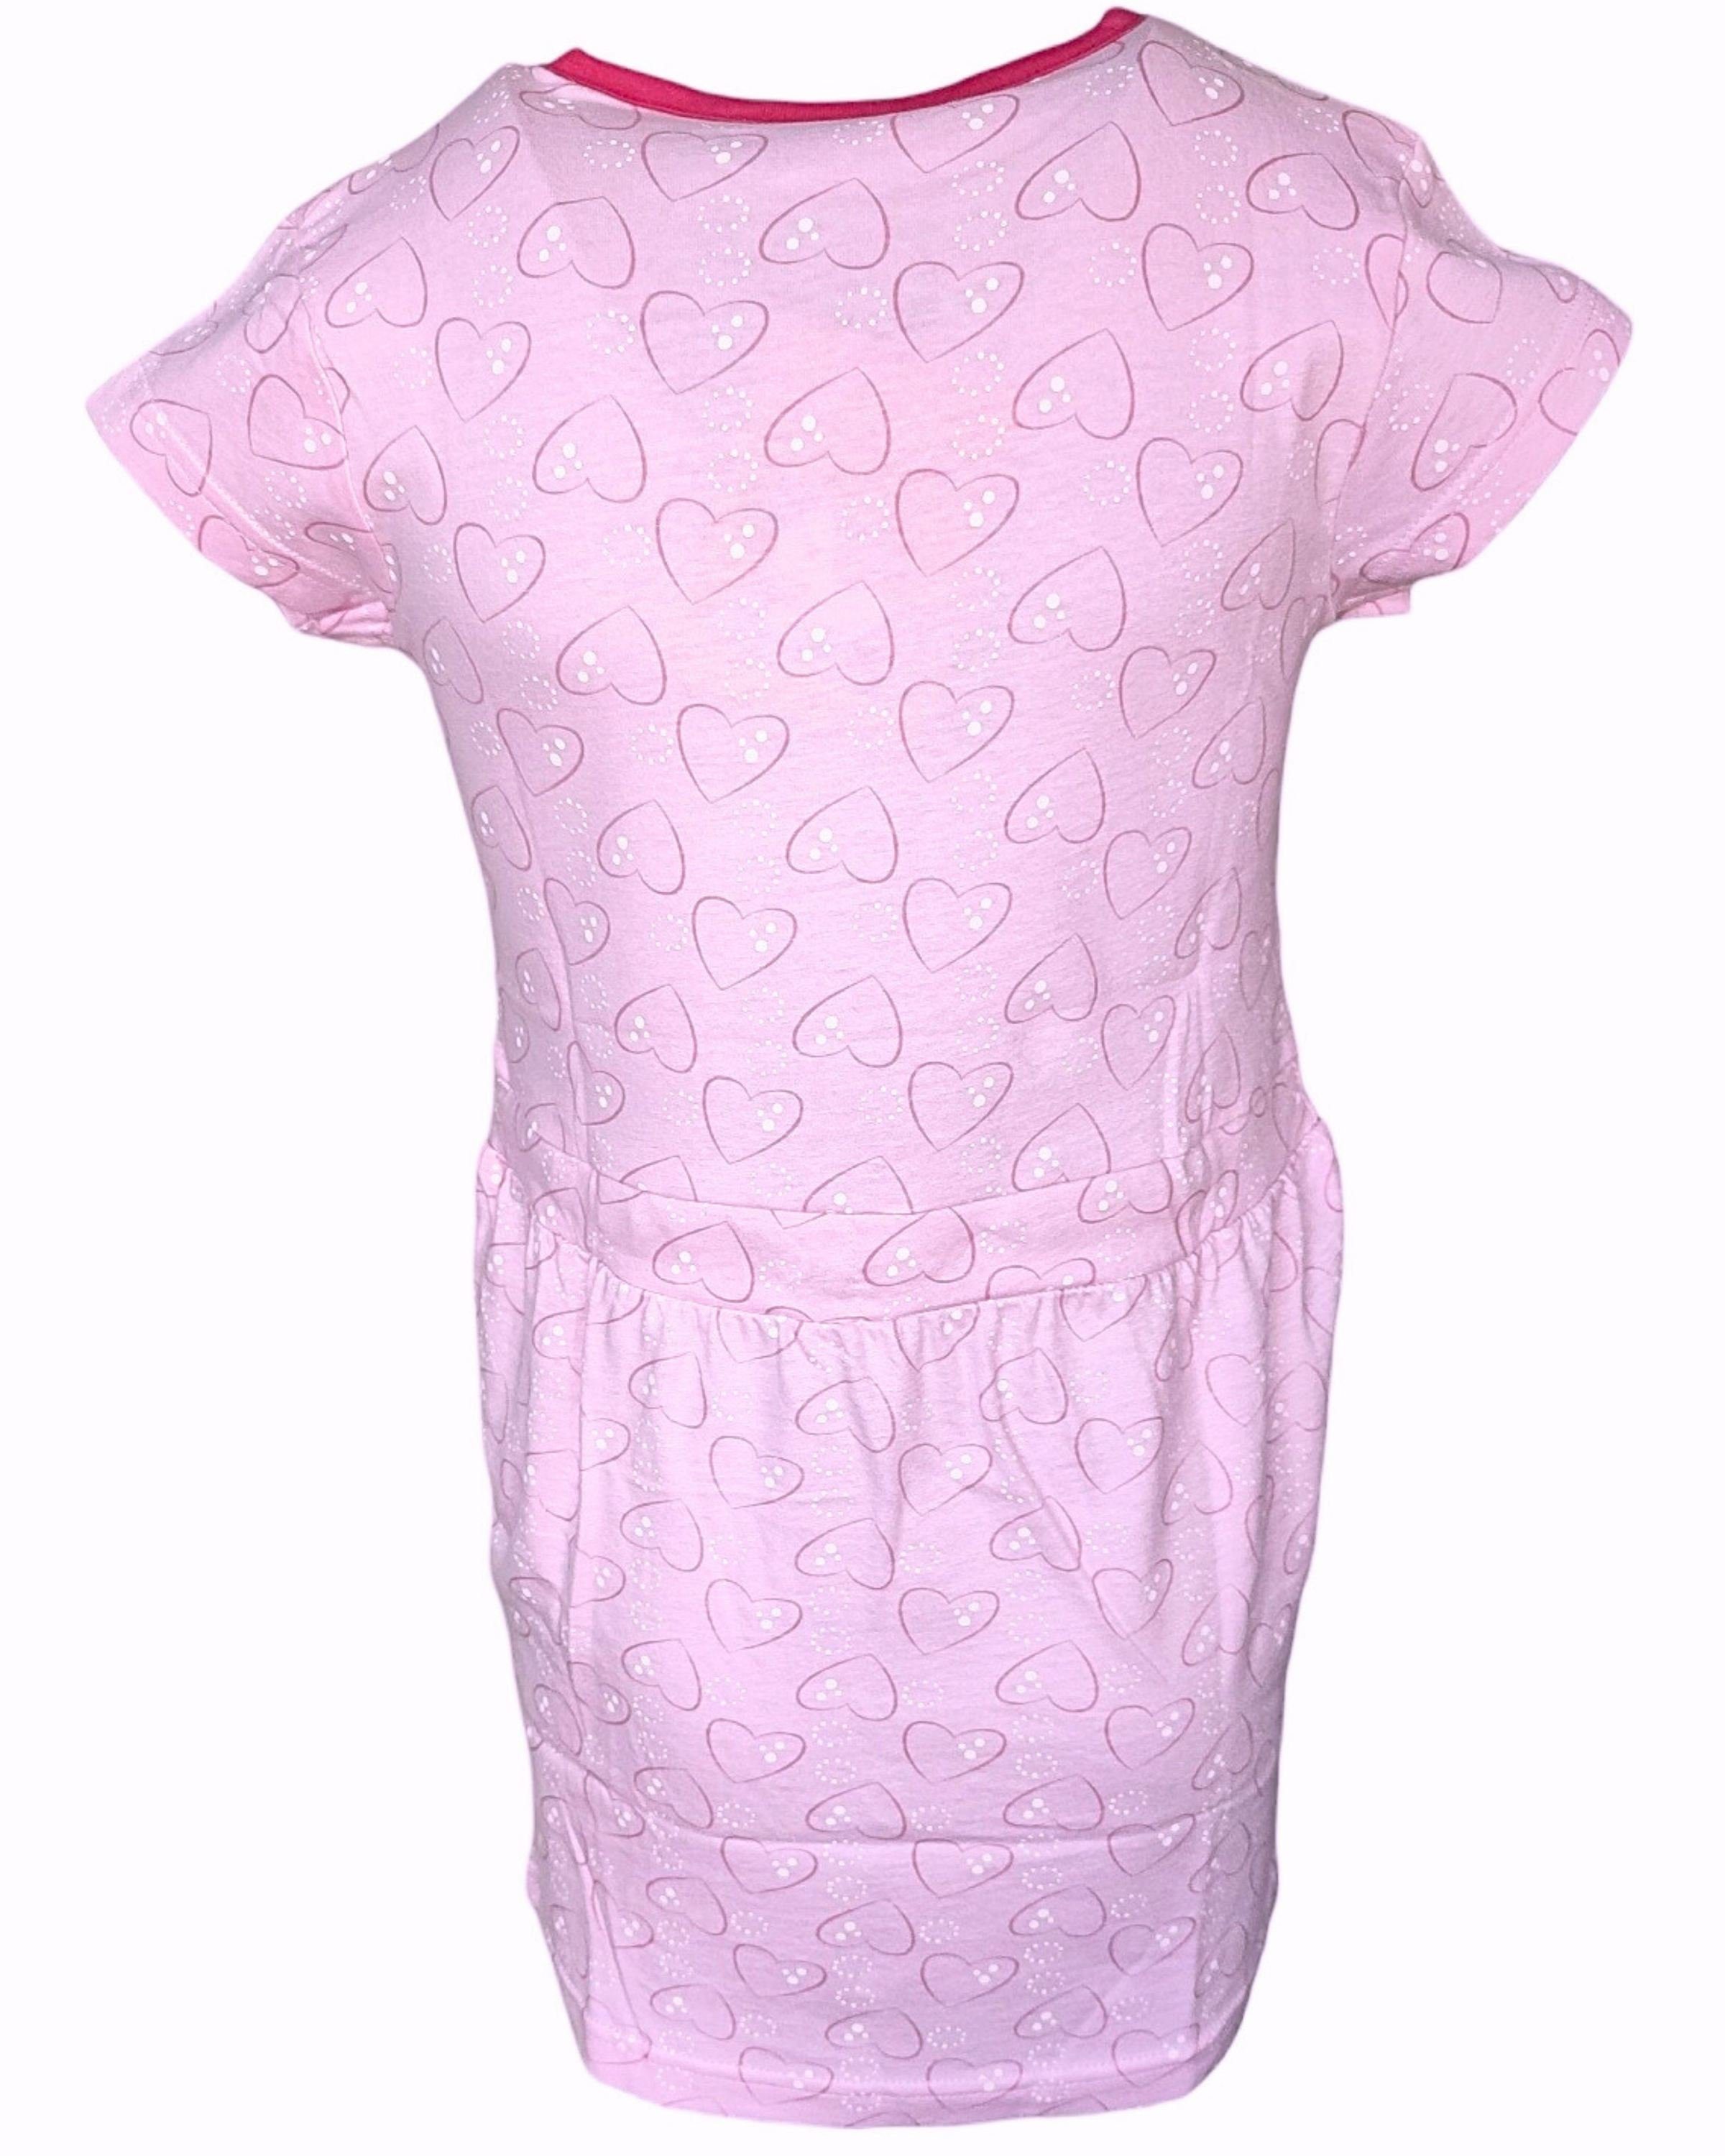 United Essentials Sommerkleid cm für Mädchen Jerseykleid Rosa Einhorn 98-128 Gr